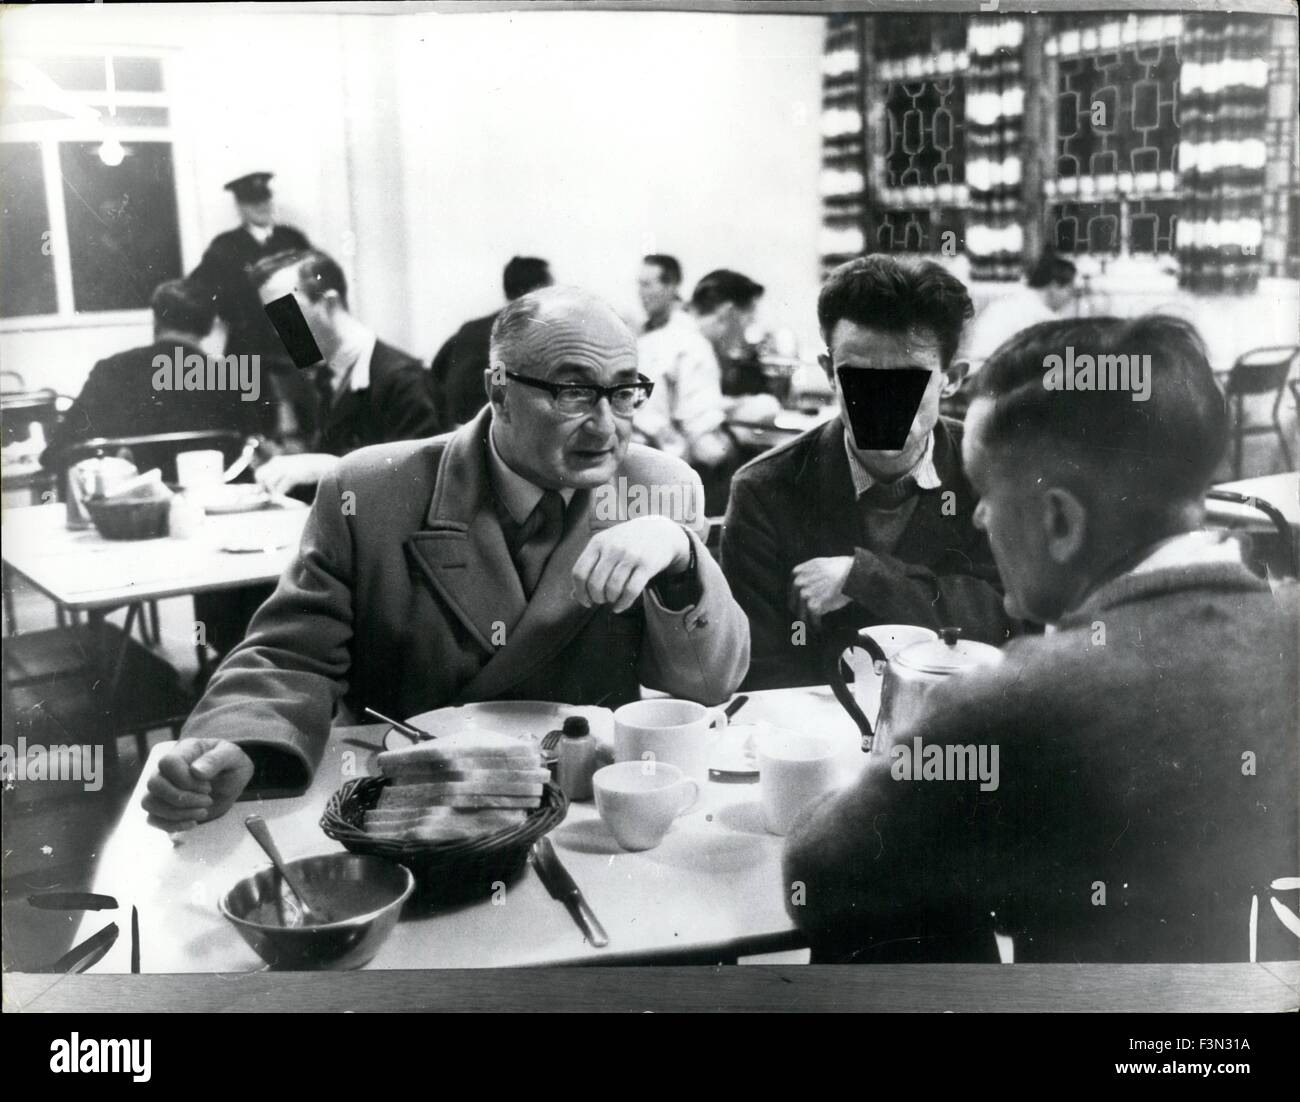 9. Januar 1968 - Peer, die zum Frühstück - im Gefängnis zu nennen. Herr Stonham sammelt seine Mahlzeit: Herrn Stonham Under-Secretary of State im Home Office - ging zum Frühstück gestern in der 20 Monate alt - 1.000.000 Blundeston Gefängnis in Suffolk. Herr Stonham -, der 60 - sein Frühstück an der Durchreiche - gesammelt und aß mit den Gefangenen sitzt. Blundeston Gefängnis ist ein maximales Sicherheit Gefängnis - und die meisten Männer dort sind zwischen 8 und 14 Jahren Sicherungsverwahrung dienen. Rechtsvorschriften zur Sicherungsverwahrung zu beenden wird voraussichtlich in der nächsten Legislaturperiode eingeführt werden. Herr Stonham Stockfoto